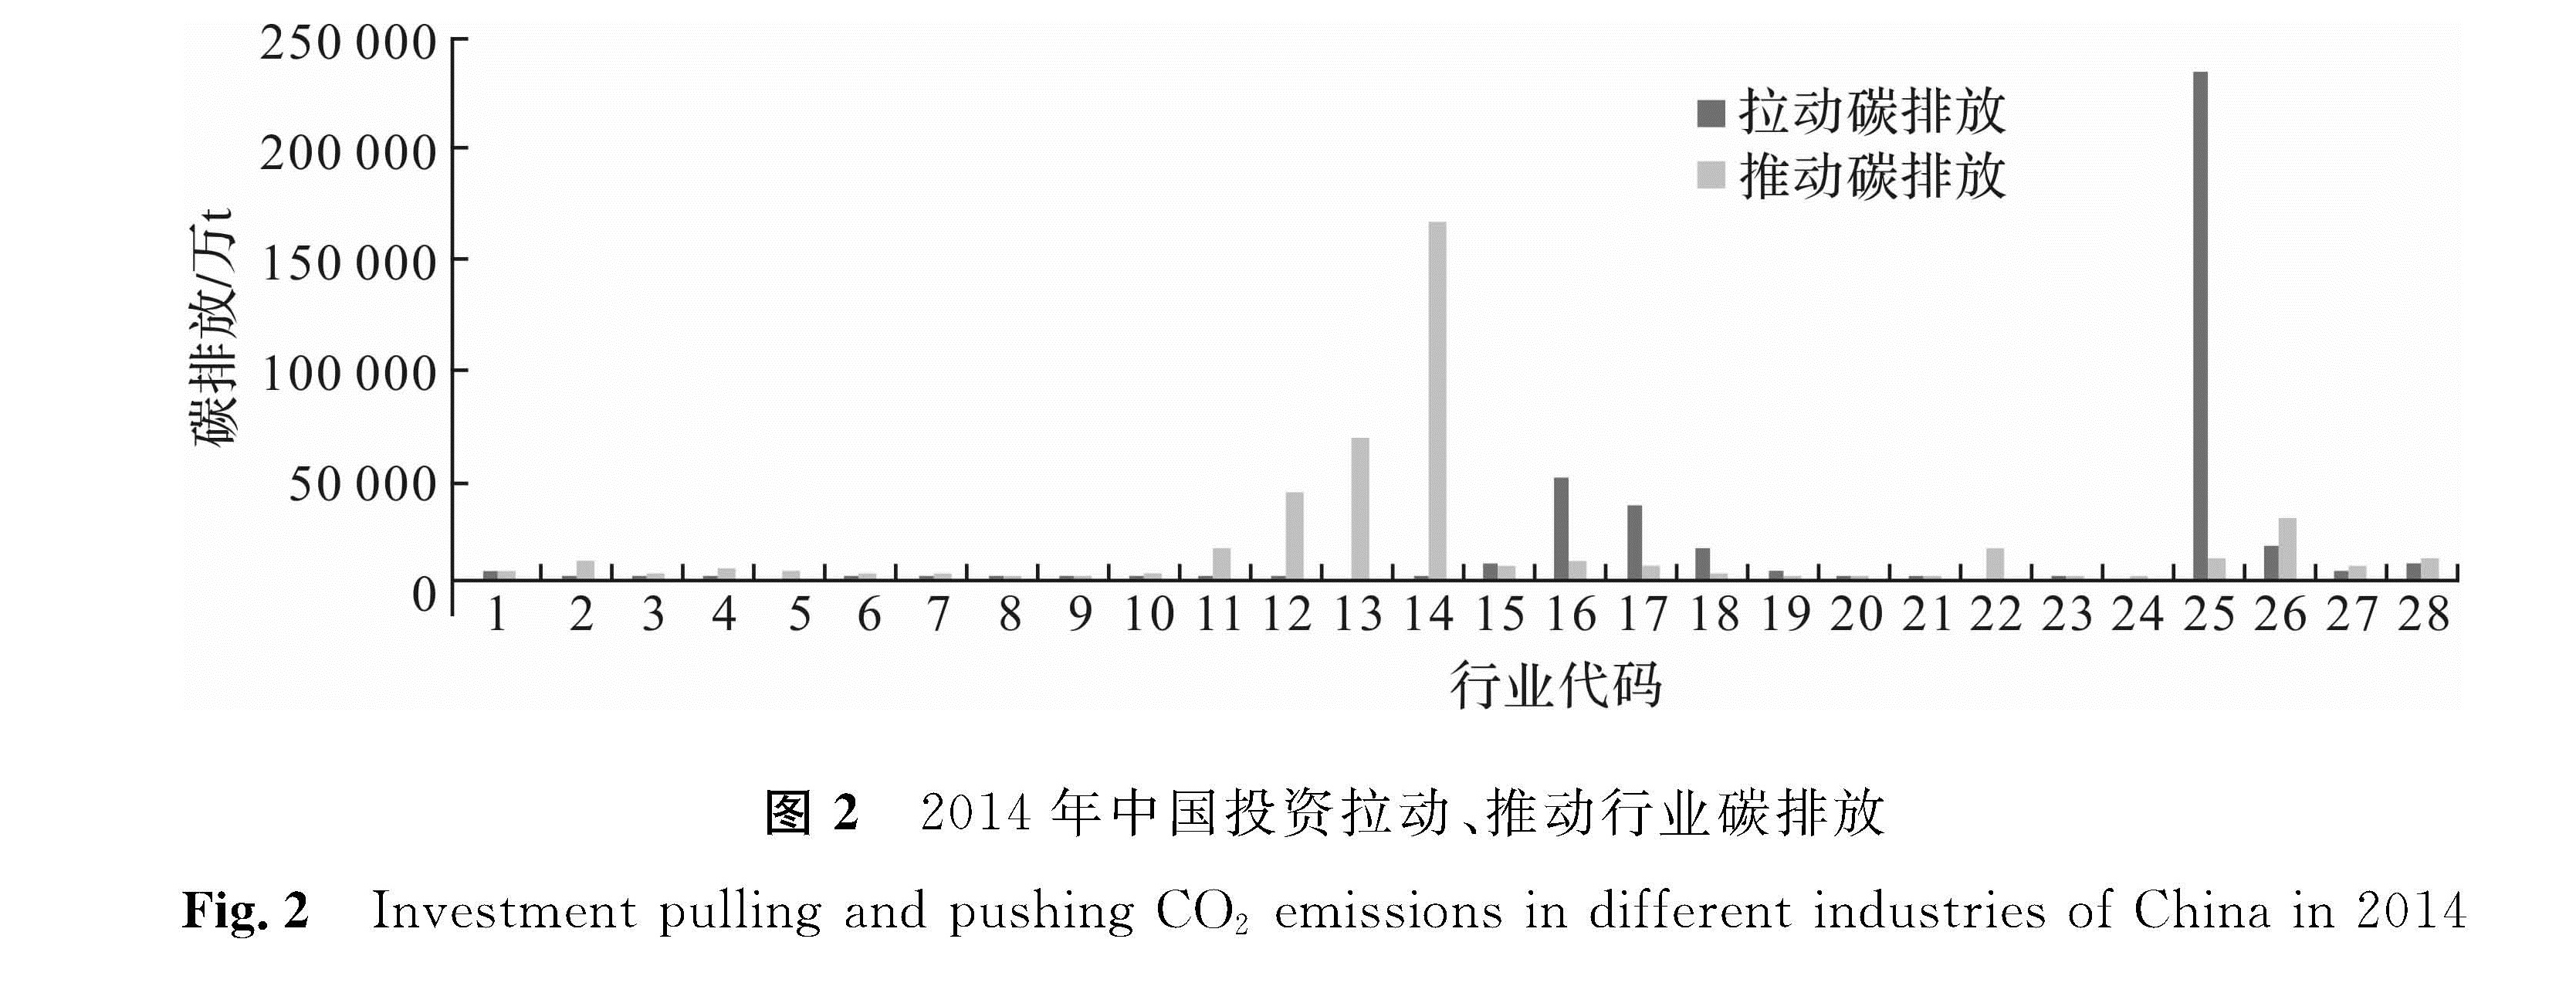 图2 2014年中国投资拉动、推动行业碳排放<br/>Fig.2 Investment pulling and pushing CO2 emissions in different industries of China in 2014